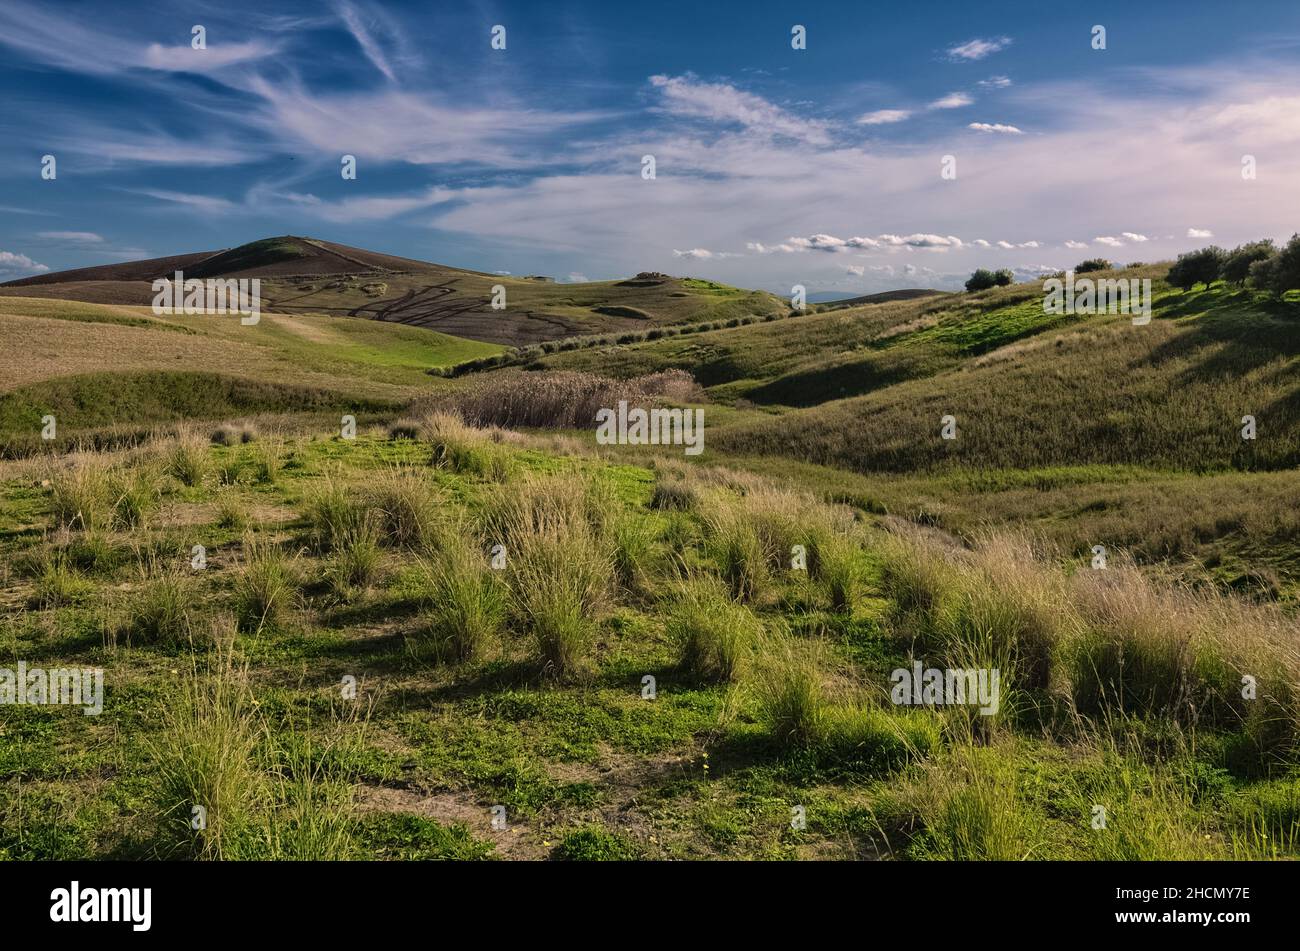 Colore invernale del paesaggio rurale in Sicilia cielo nuvoloso e agricoltura collinare Foto Stock